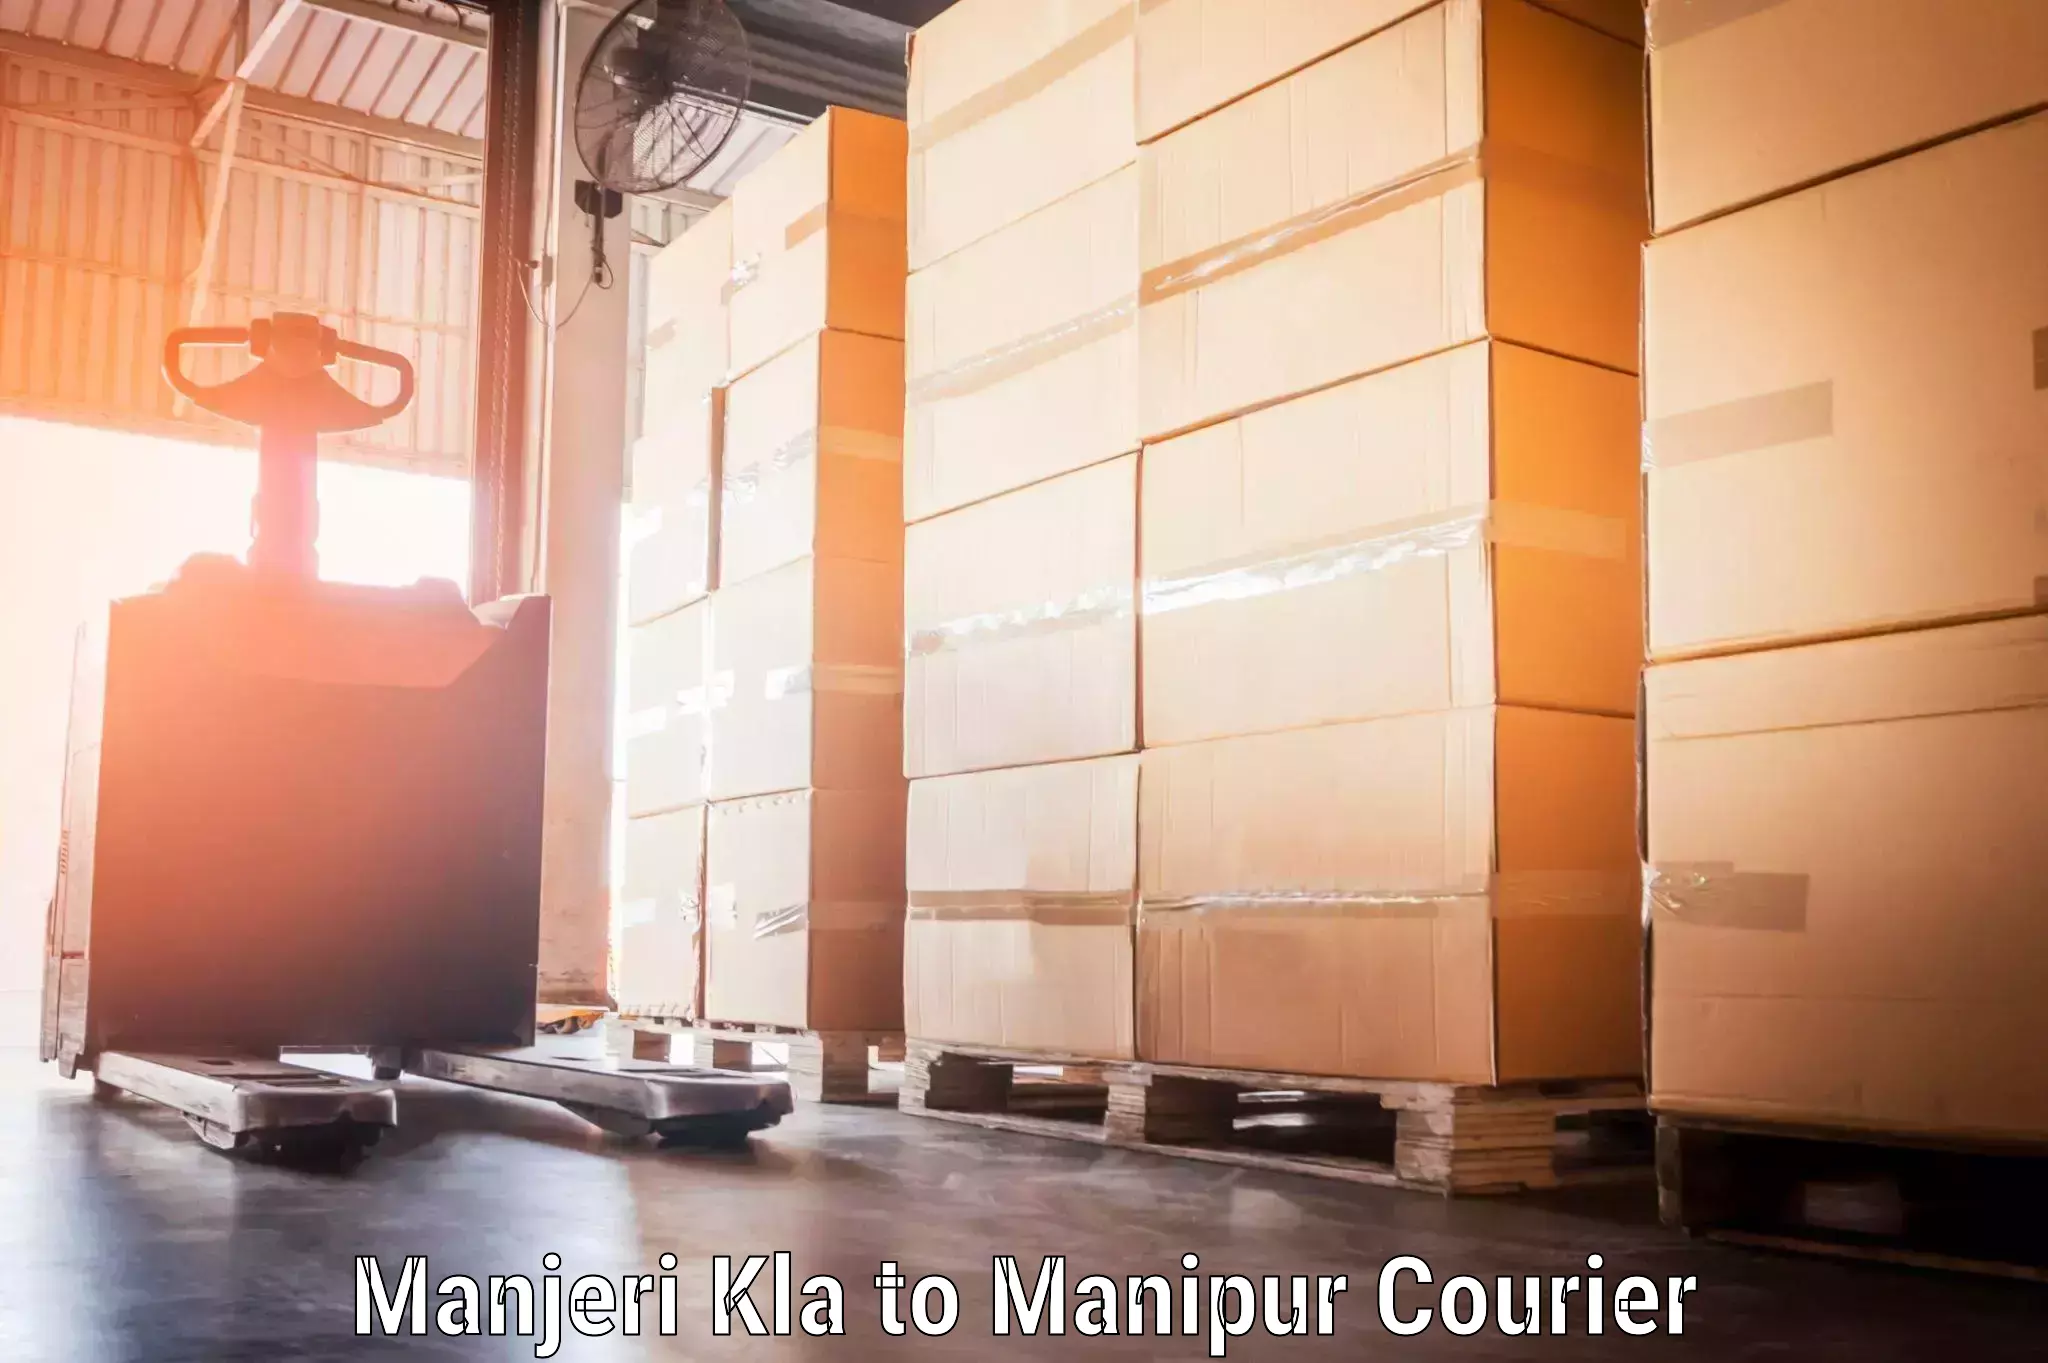 Baggage transport network Manjeri Kla to Manipur